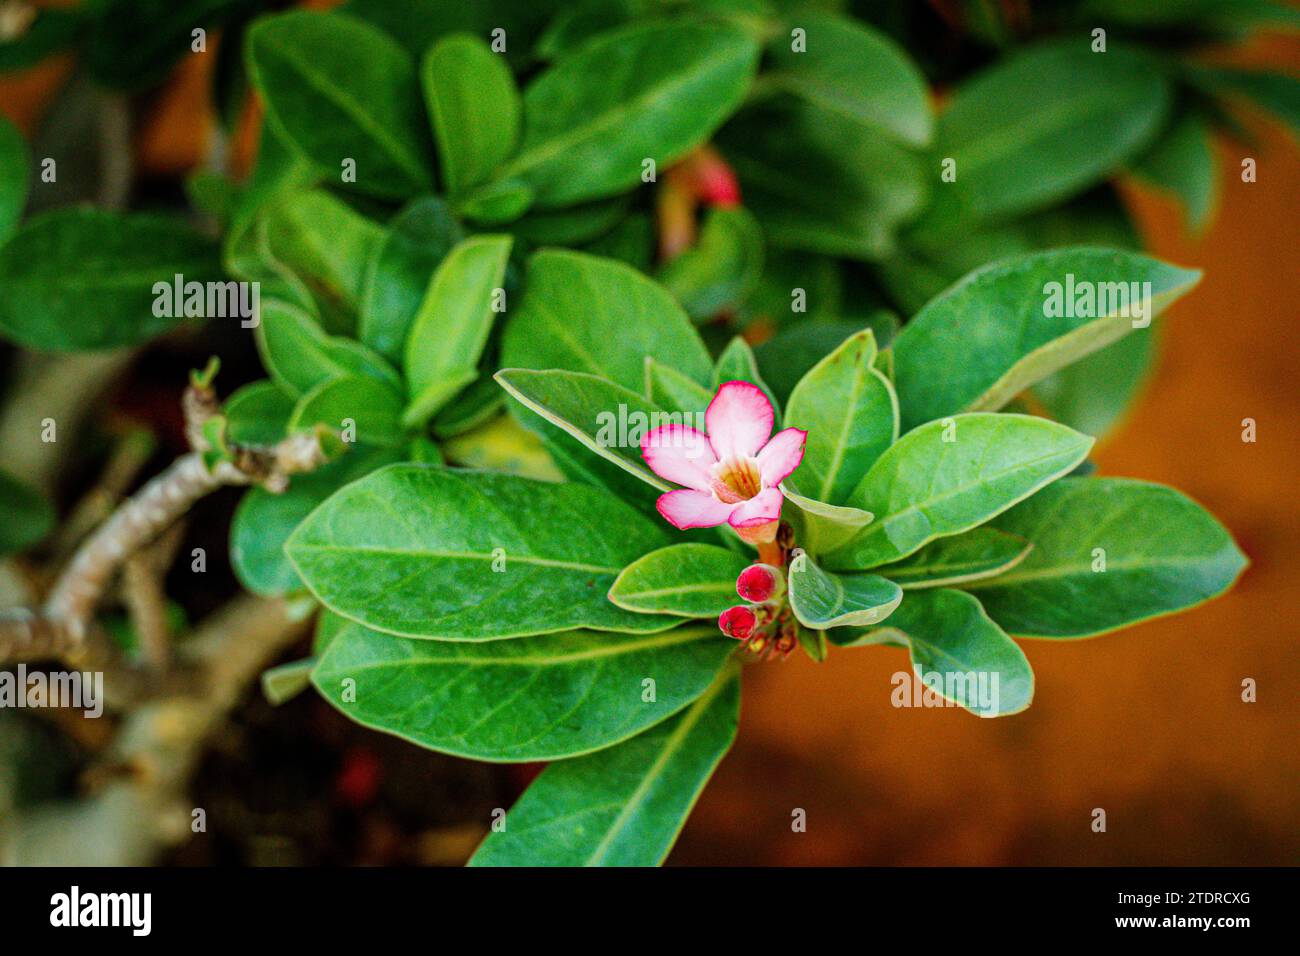 Fiore di rosa del deserto (altri nomi sono rosa del deserto, finta Azalea) nel giardino delle pentole. Ha un fiore rosa con 5 petali, forma a cono alla base con gocce d'acqua. Foto Stock